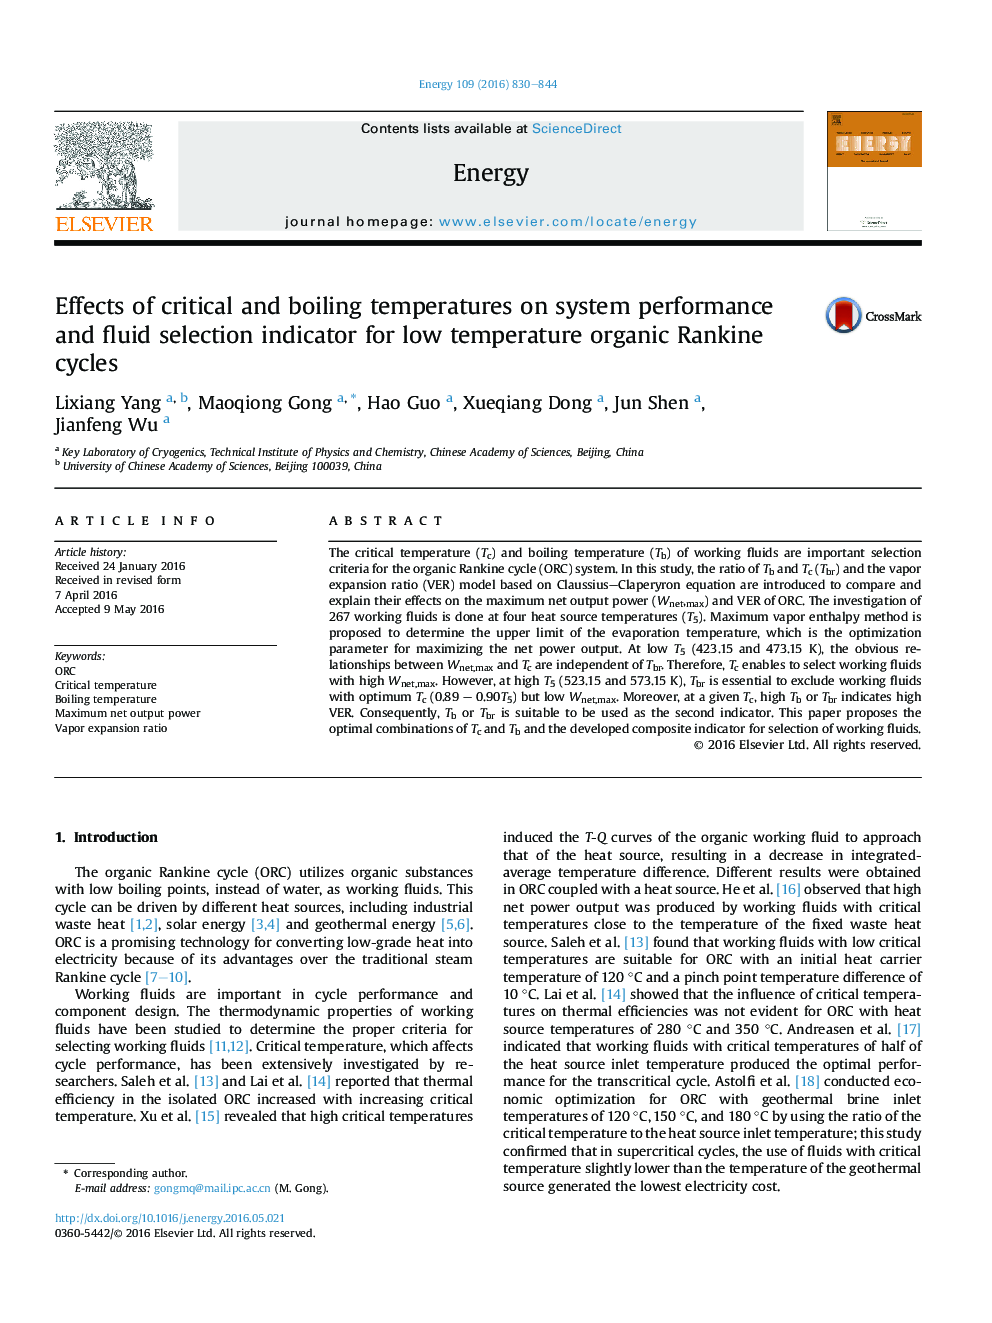 اثرات دماهای بحرانی و جوش بر عملکرد سیستم و شاخص انتخاب سیال برای چرخه های رنکین آلی کم دمای 